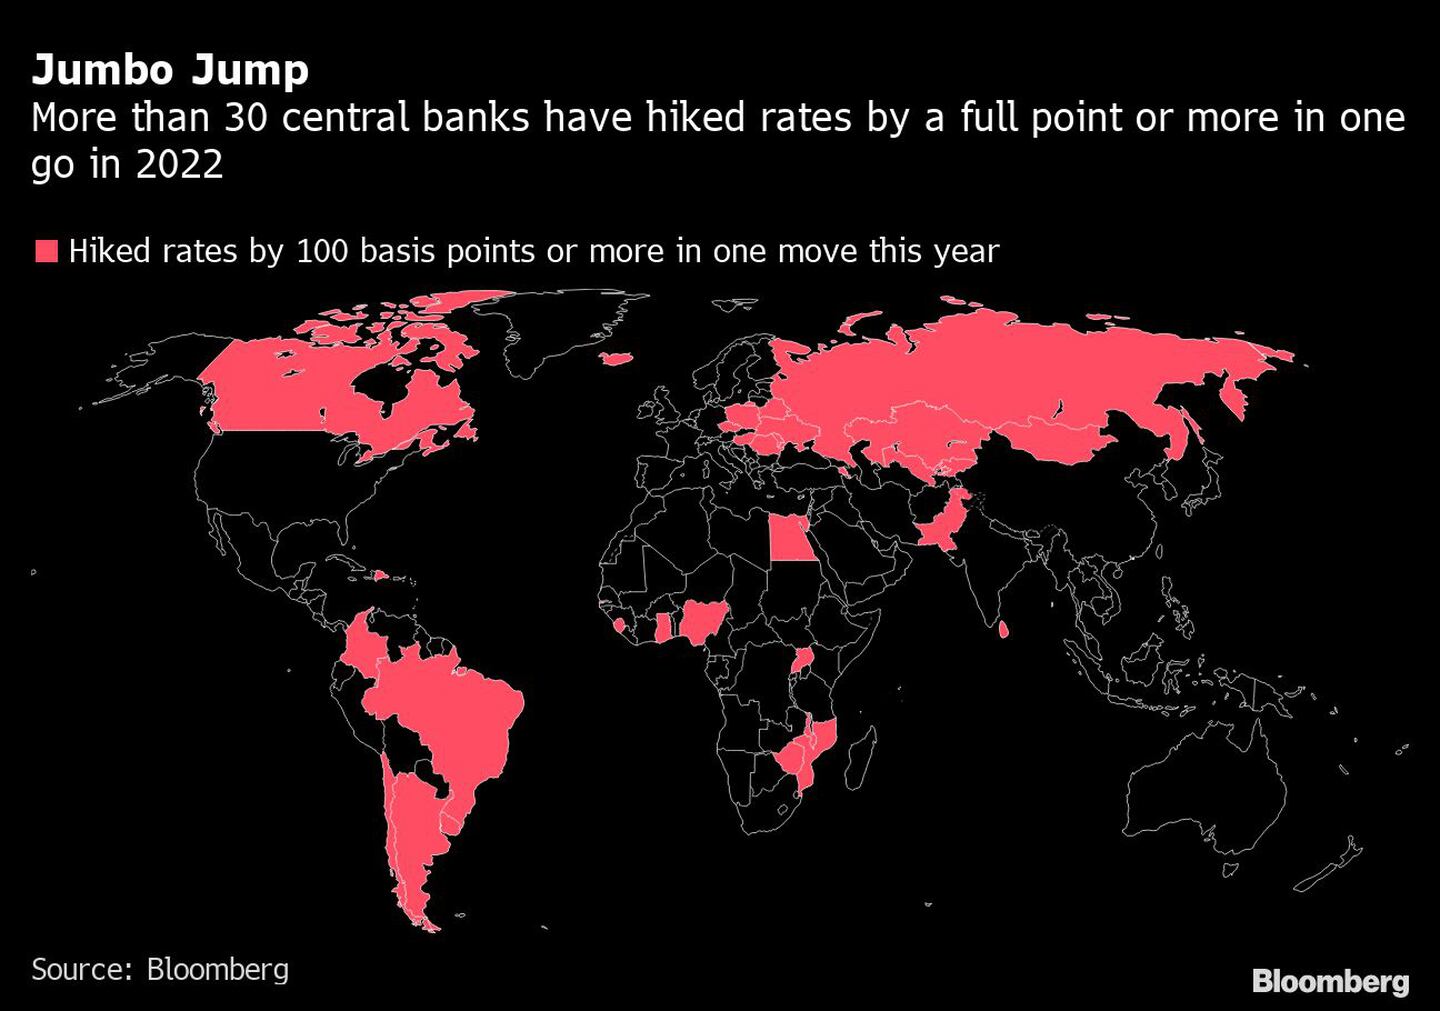 Más de 30 bancos centrales han subido los tipos un punto o más de una vez en 2022
dfd